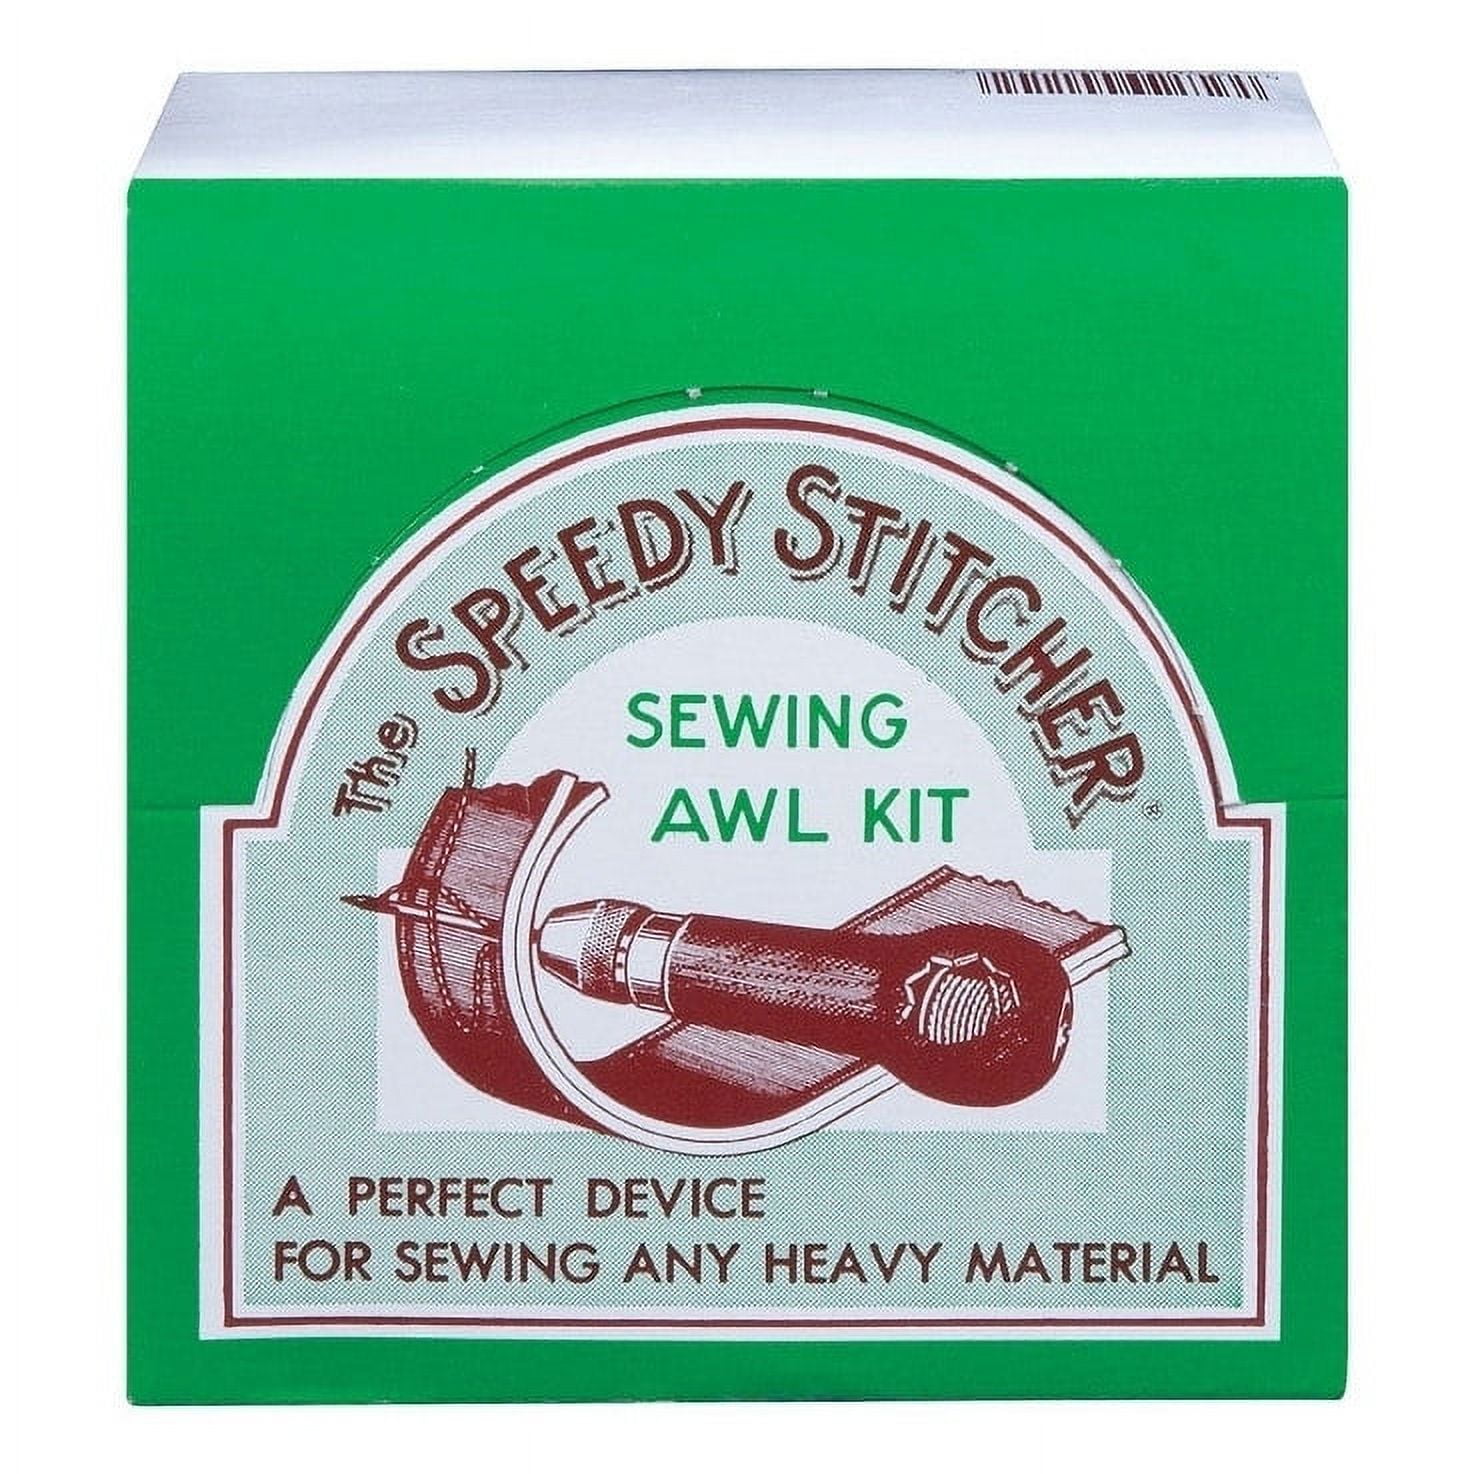 Speedy Stitcher Sewing Awl Kit